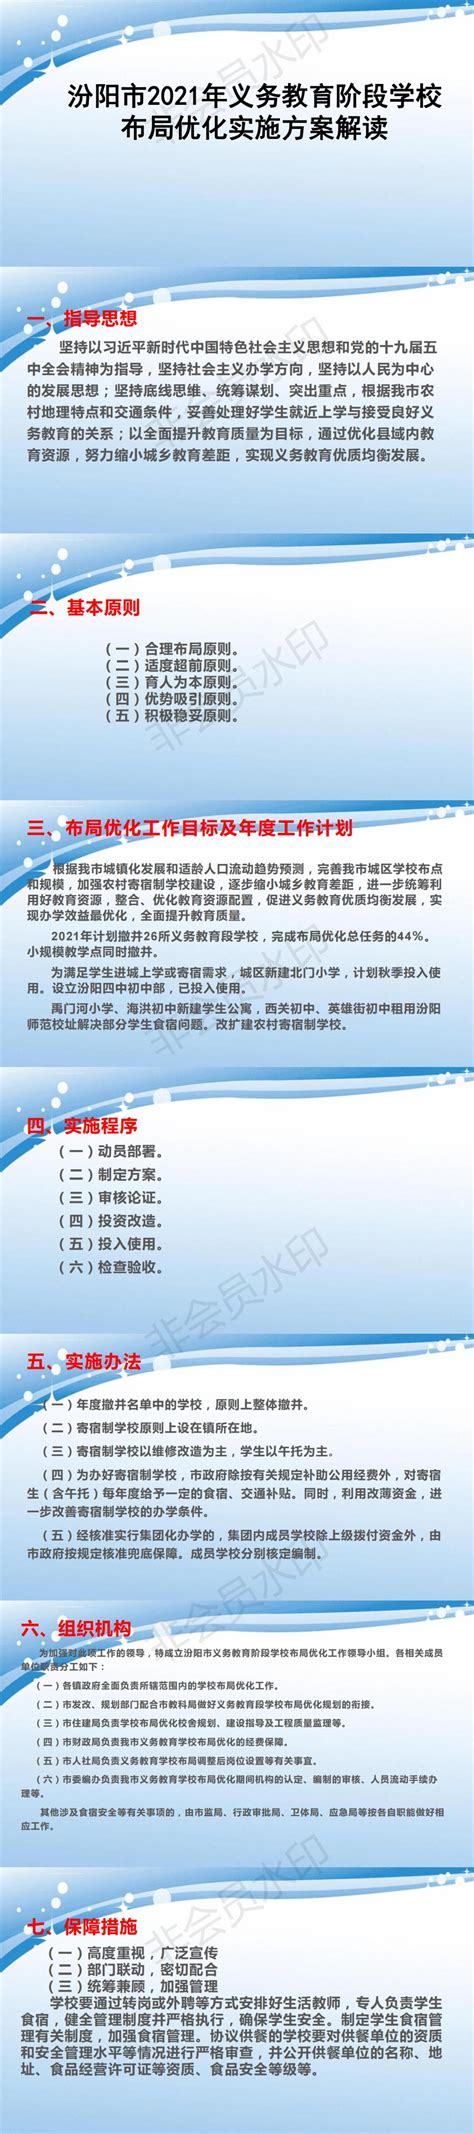 赵东海主持召开两校区布局调整工作推进会-内蒙古师范大学新闻网